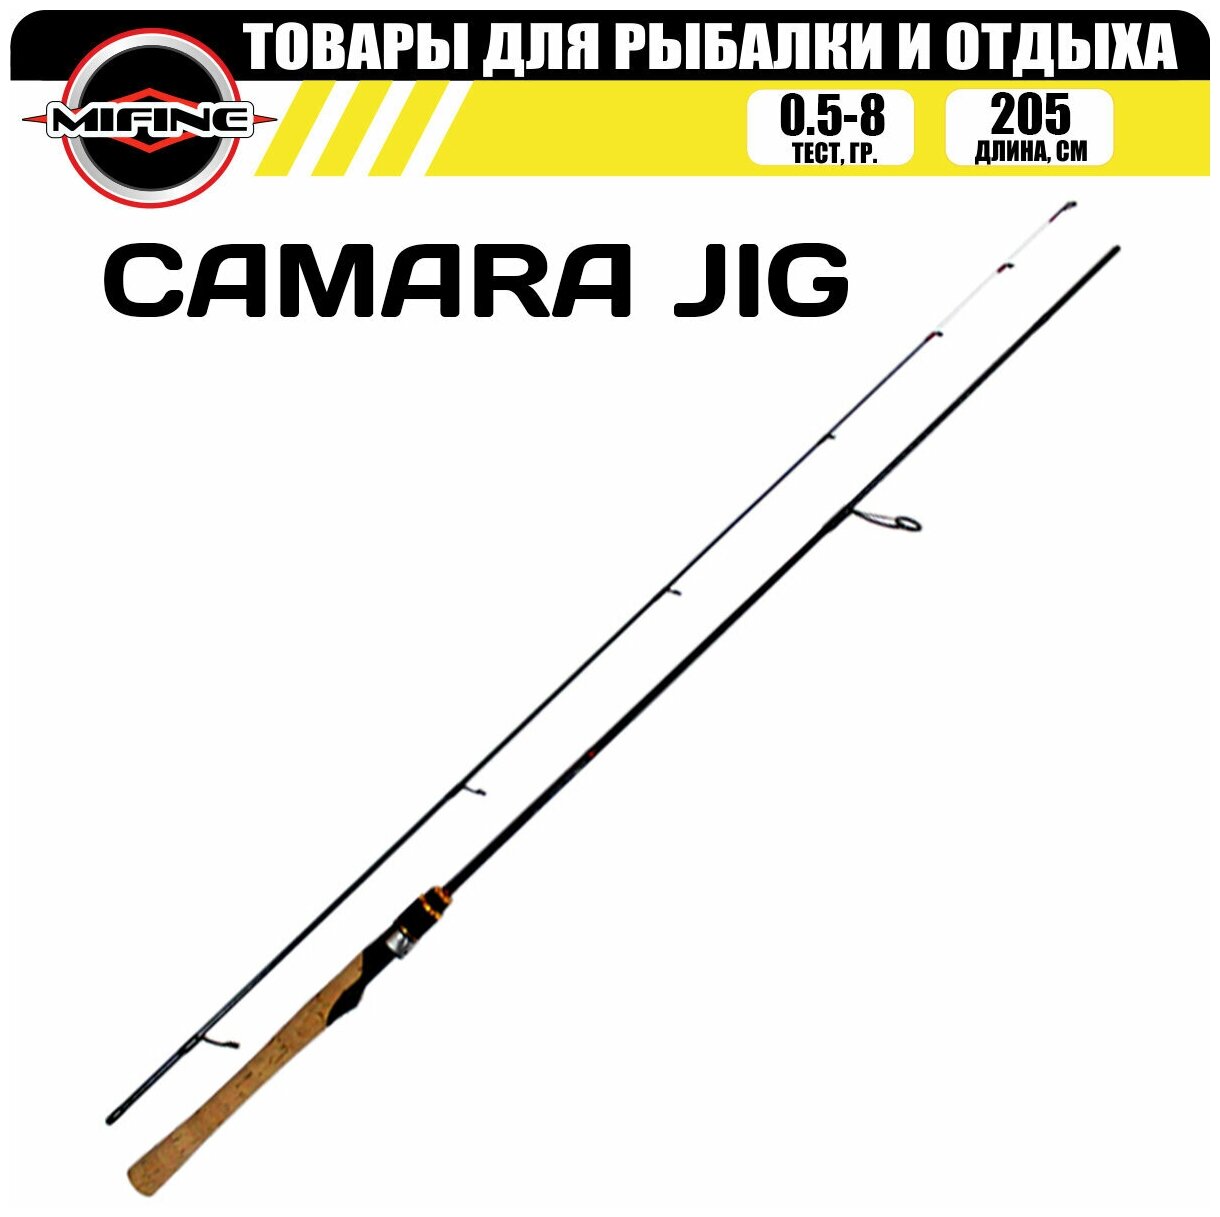 Спиннинг штекерный с быстрым строем MIFINE CAMARA JIG SPIN 2.05м (0.5-8гр), для рыбалки, рыболовный